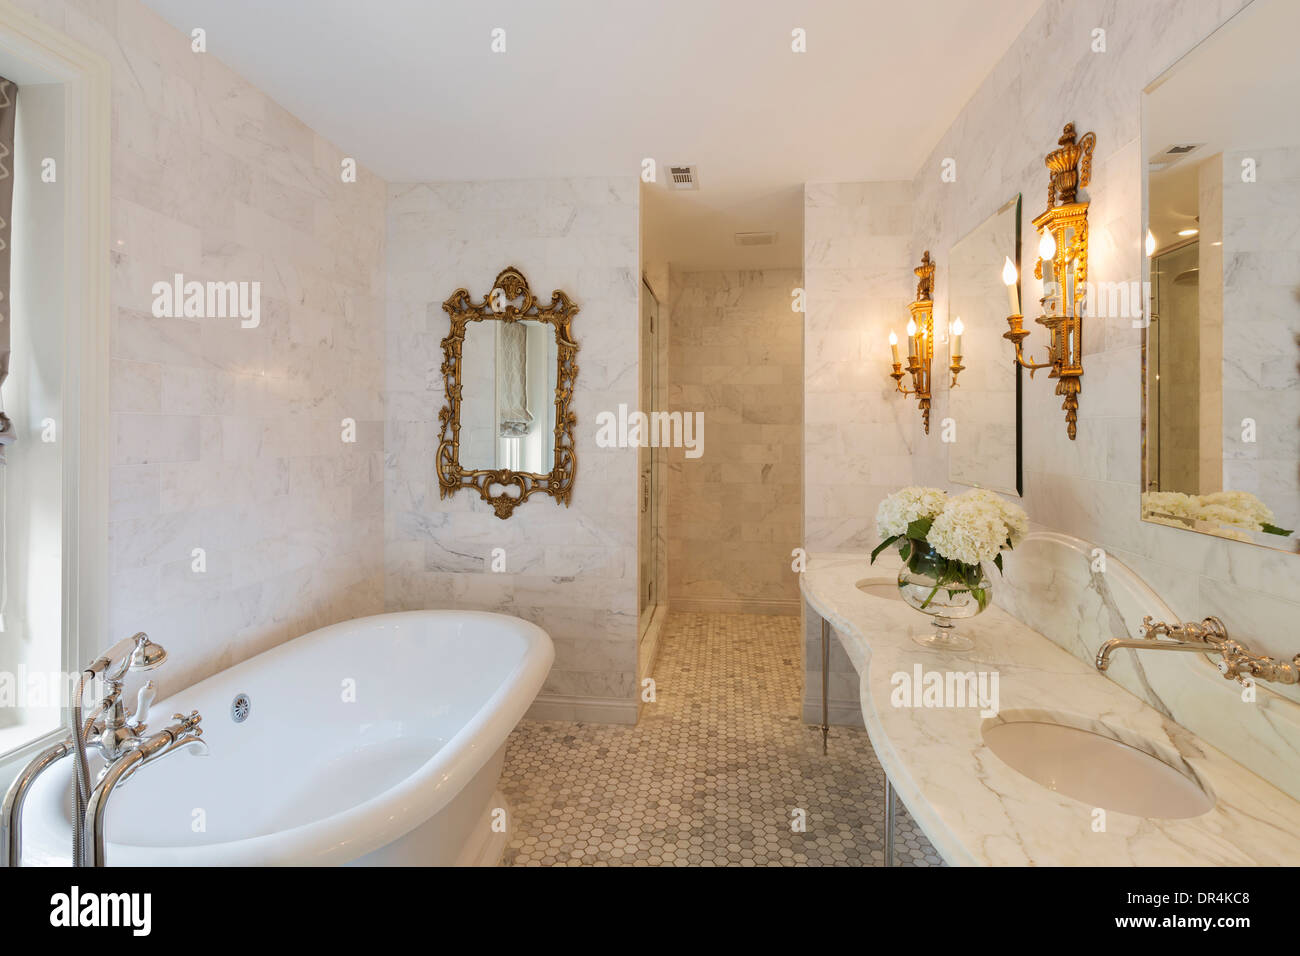 Badewanne und spiegeln in den reich verzierten Badezimmer Stockfoto